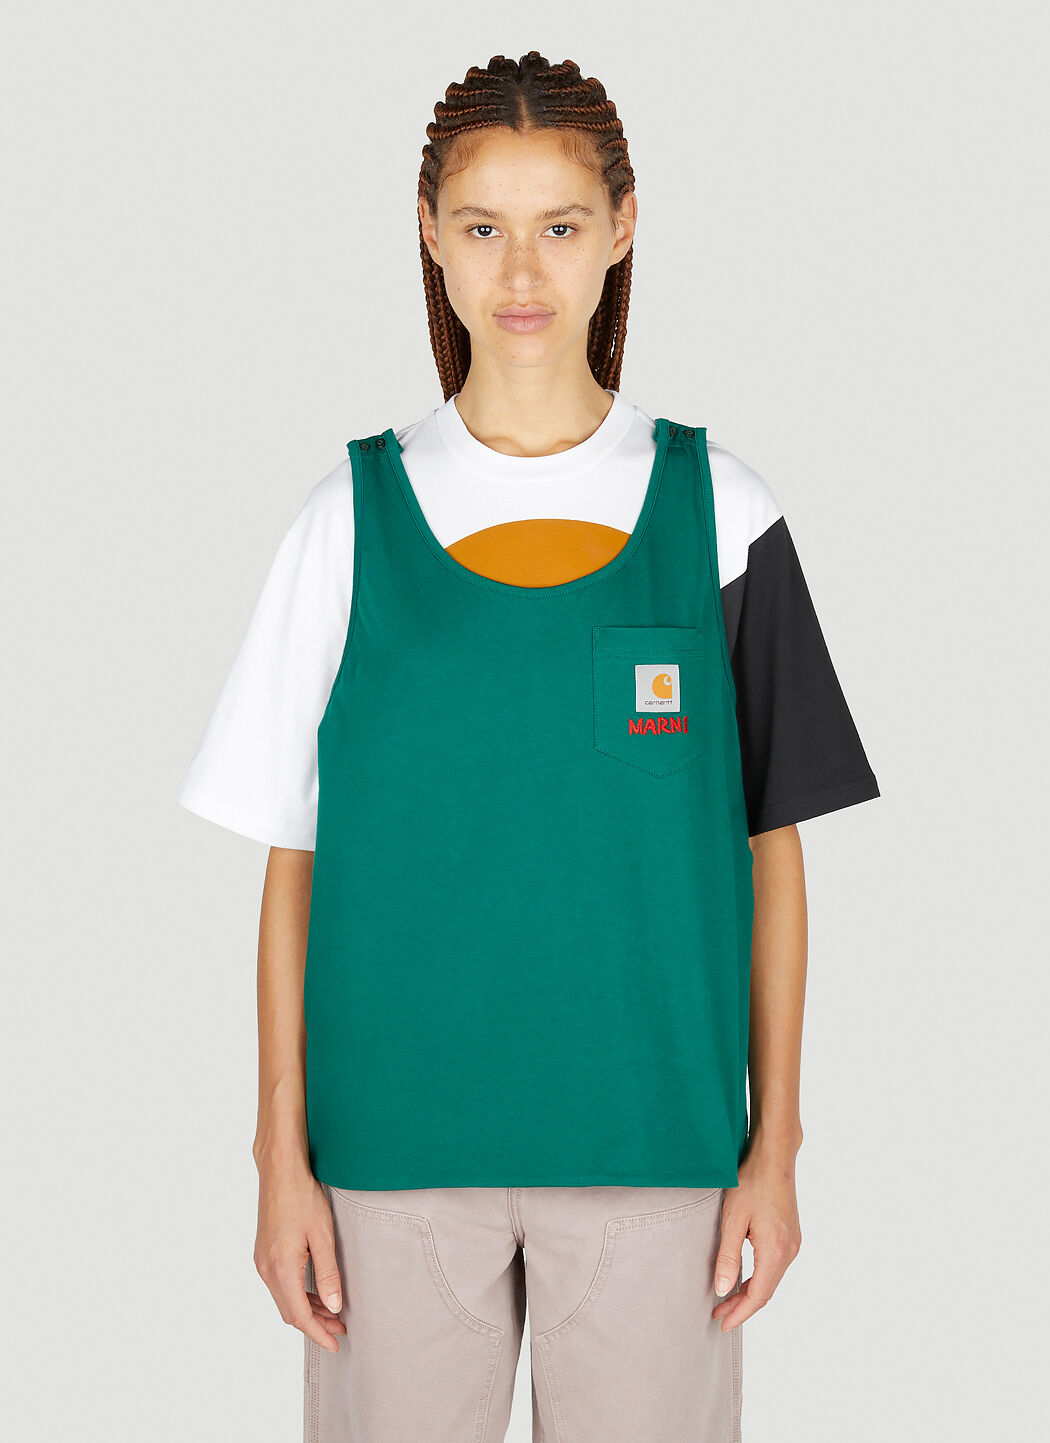 Marni x Carhartt 徽标贴饰 Bib T 恤 绿色 mca0250015